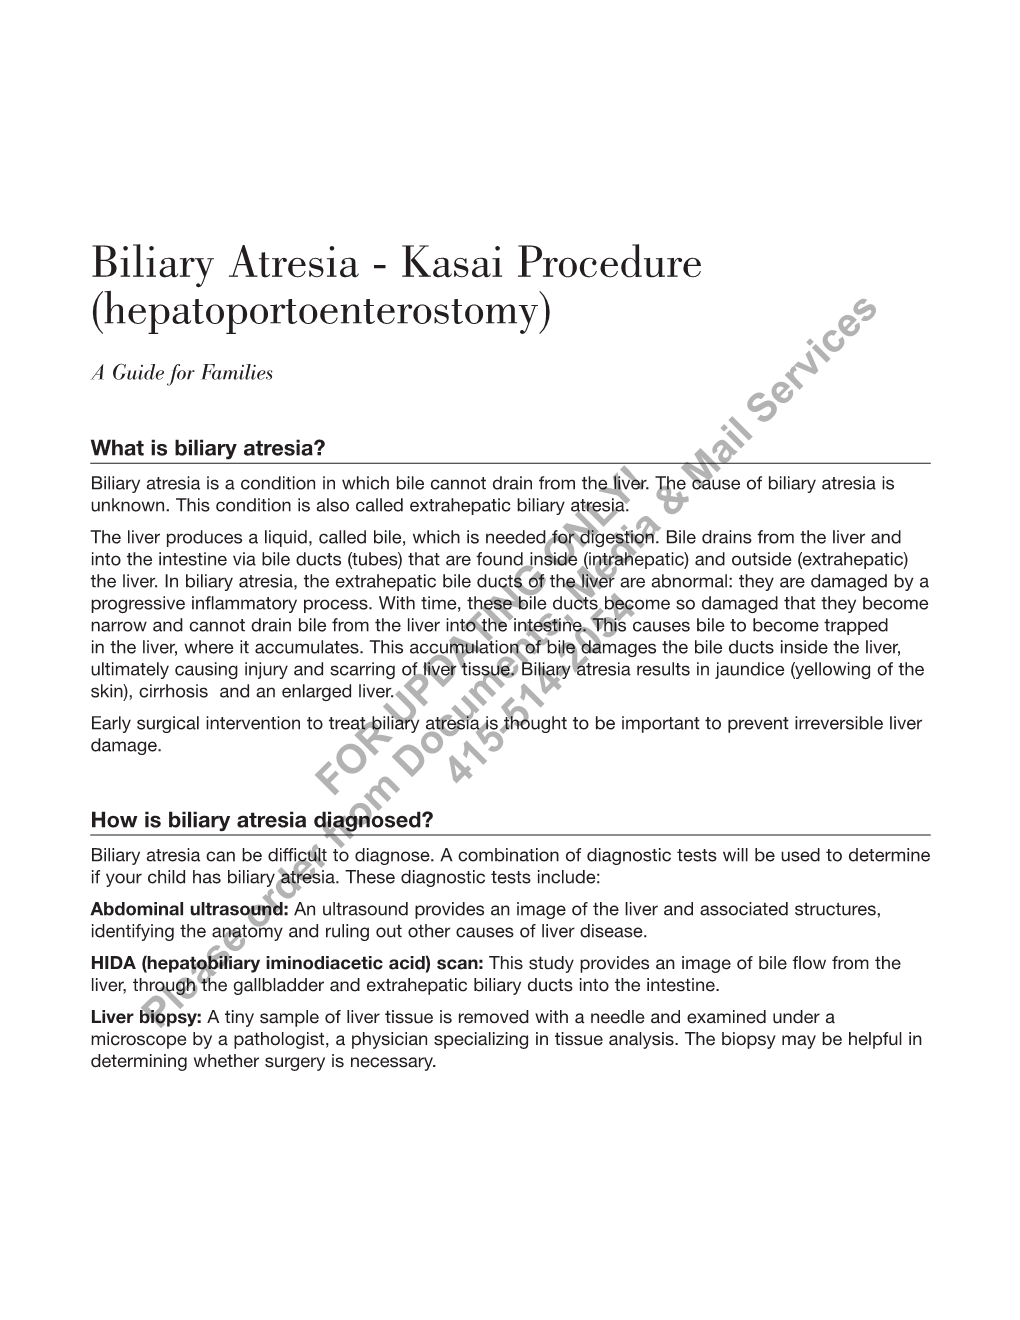 Biliary Atresia - Kasai Procedure (Hepatoportoenterostomy)